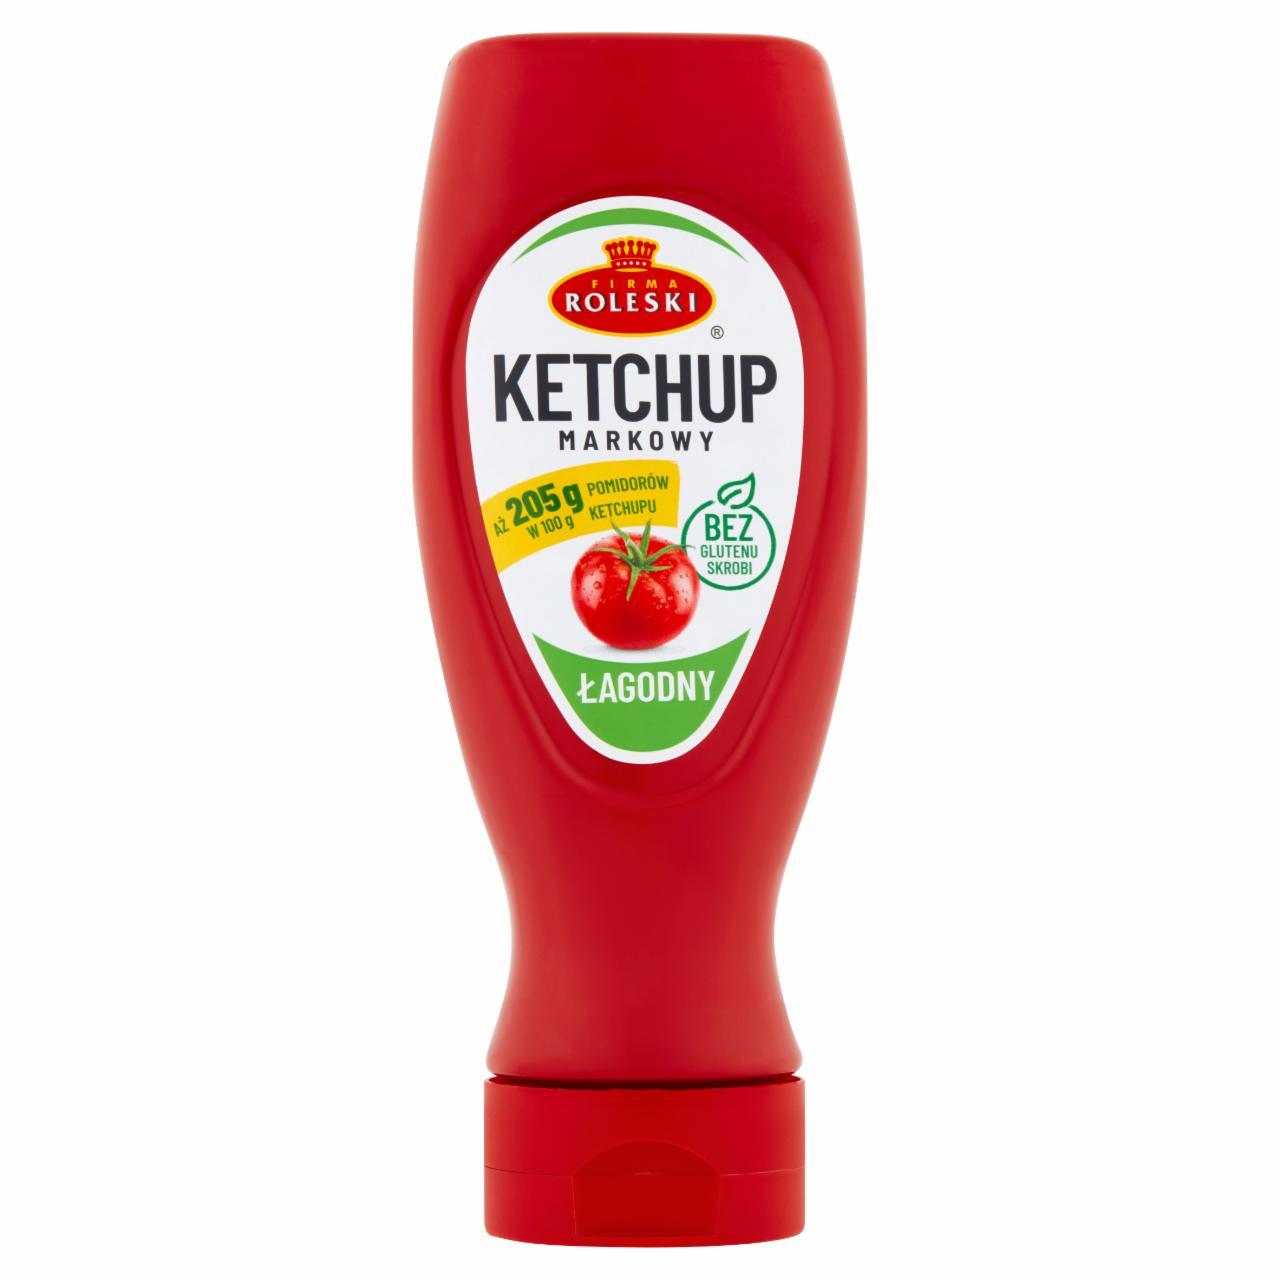 Zdjęcia - Firma Roleski Ketchup markowy łagodny 450 g